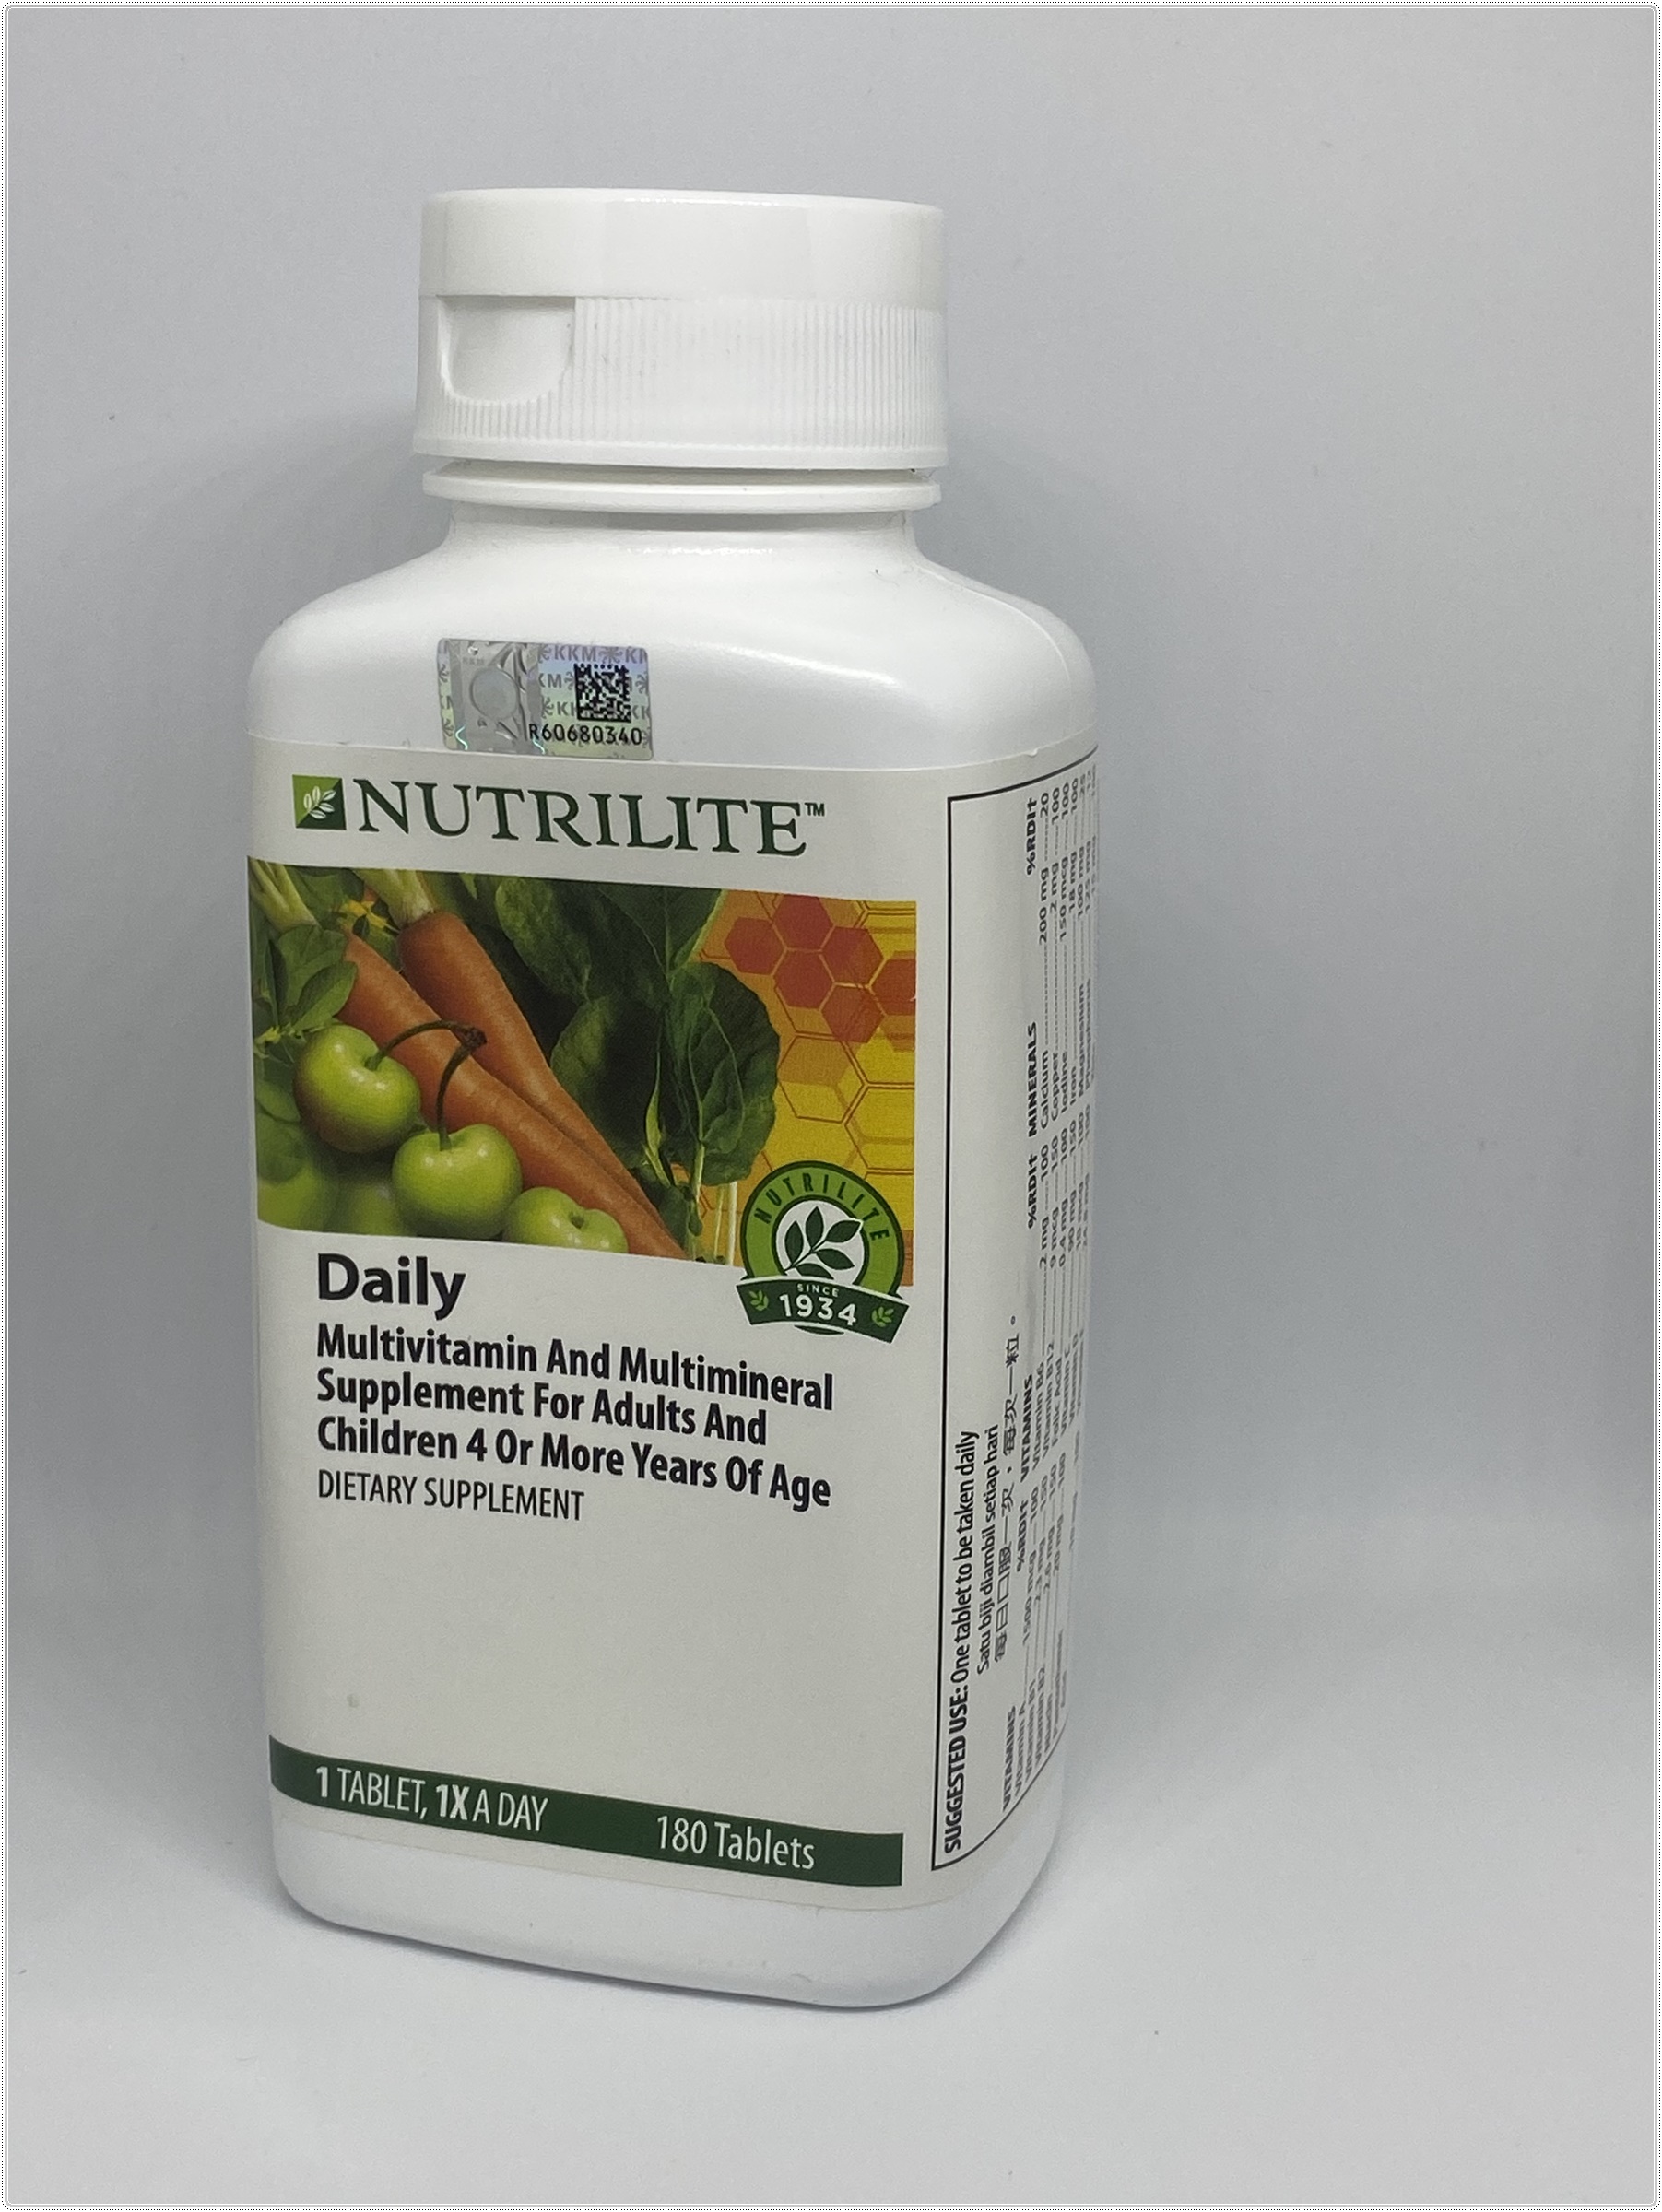 Nutrilite Daily Multivitamin And Multimineral แท้ช็อปมาเลเซีย( 180 เม็ด)สำหรับผู้ใหญ่และเด็ก 4ขวบขึ้นไป